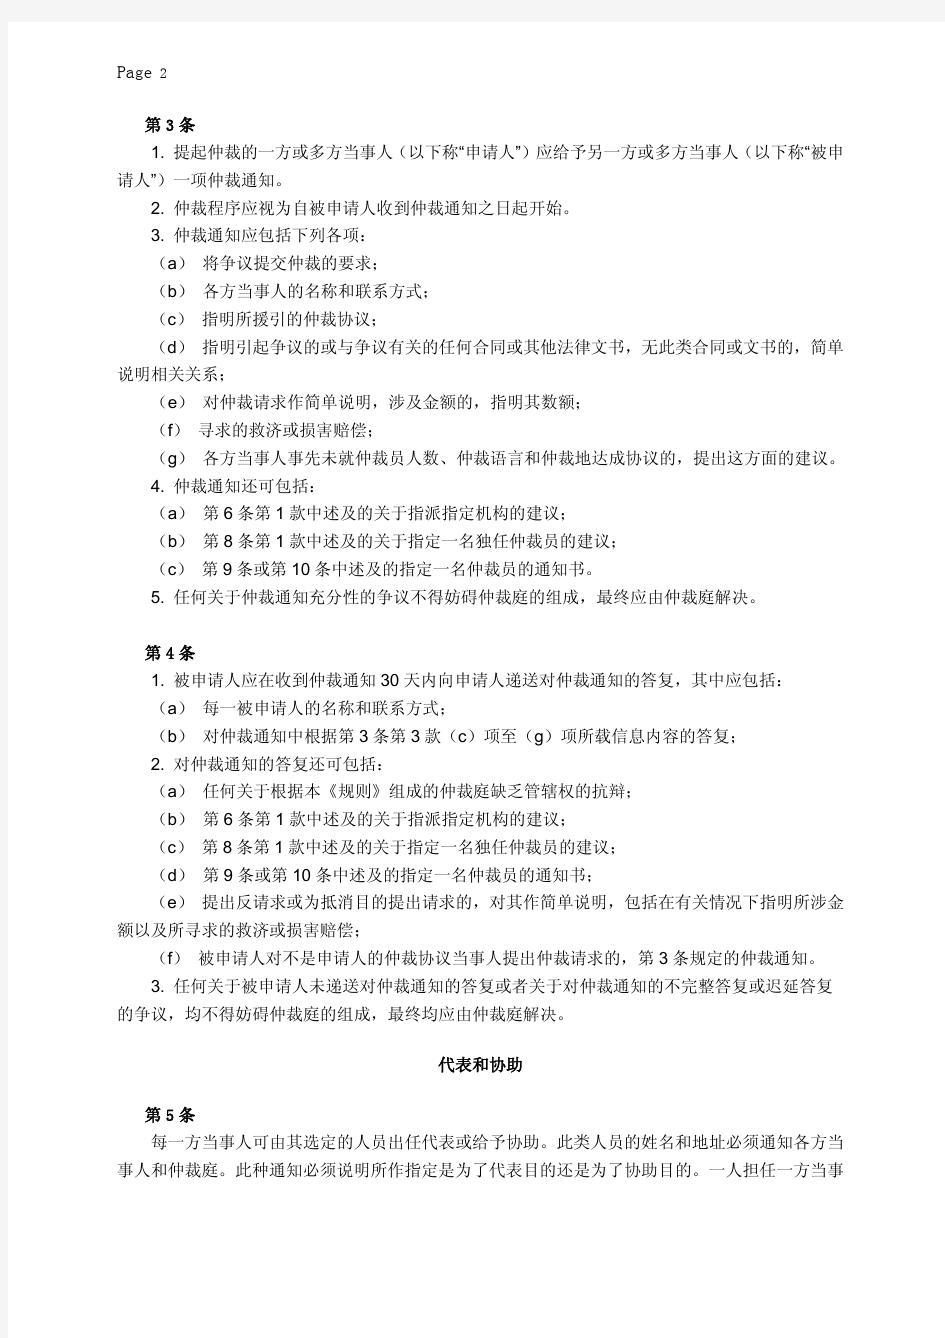 联合国国际贸易法委员会仲裁规则2010 中文